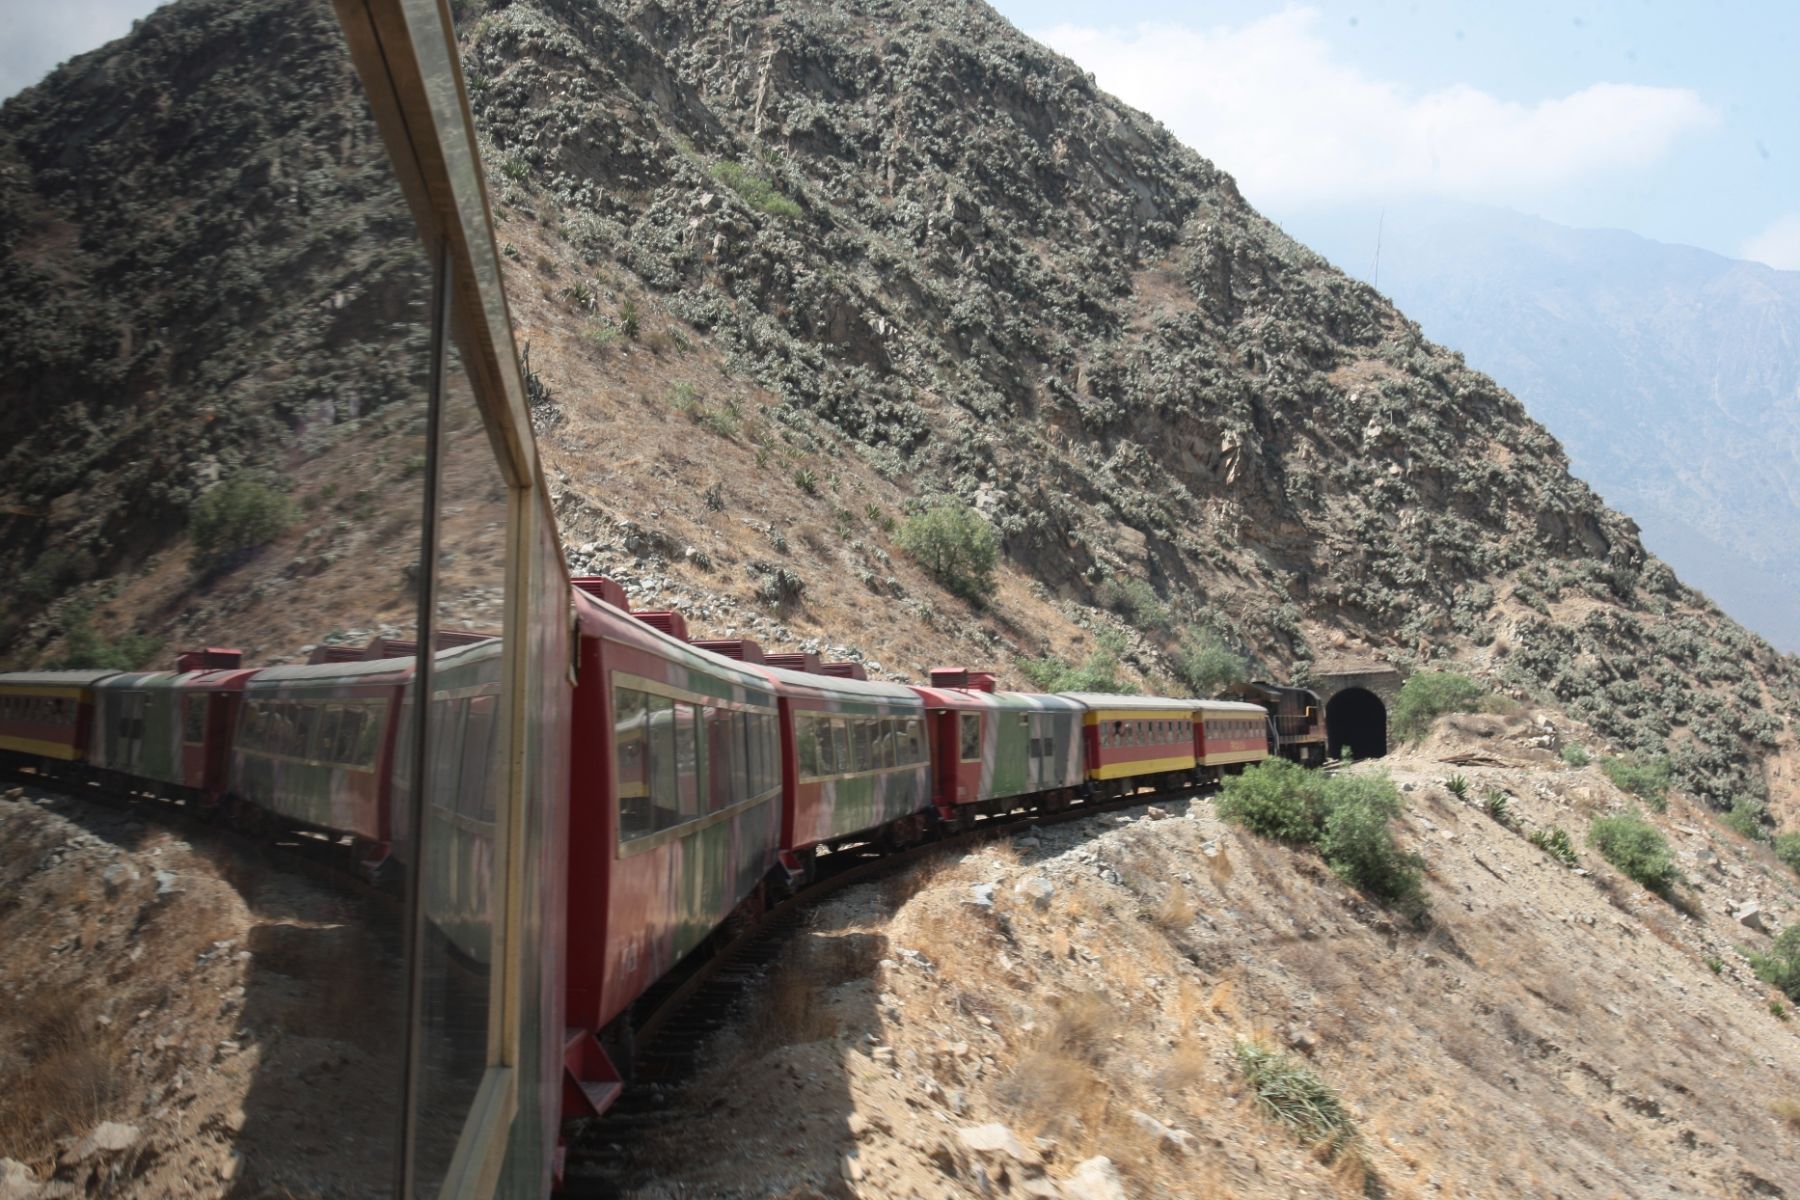 Ferrocarril del Centro rail line. Photo: Andina/Archive.